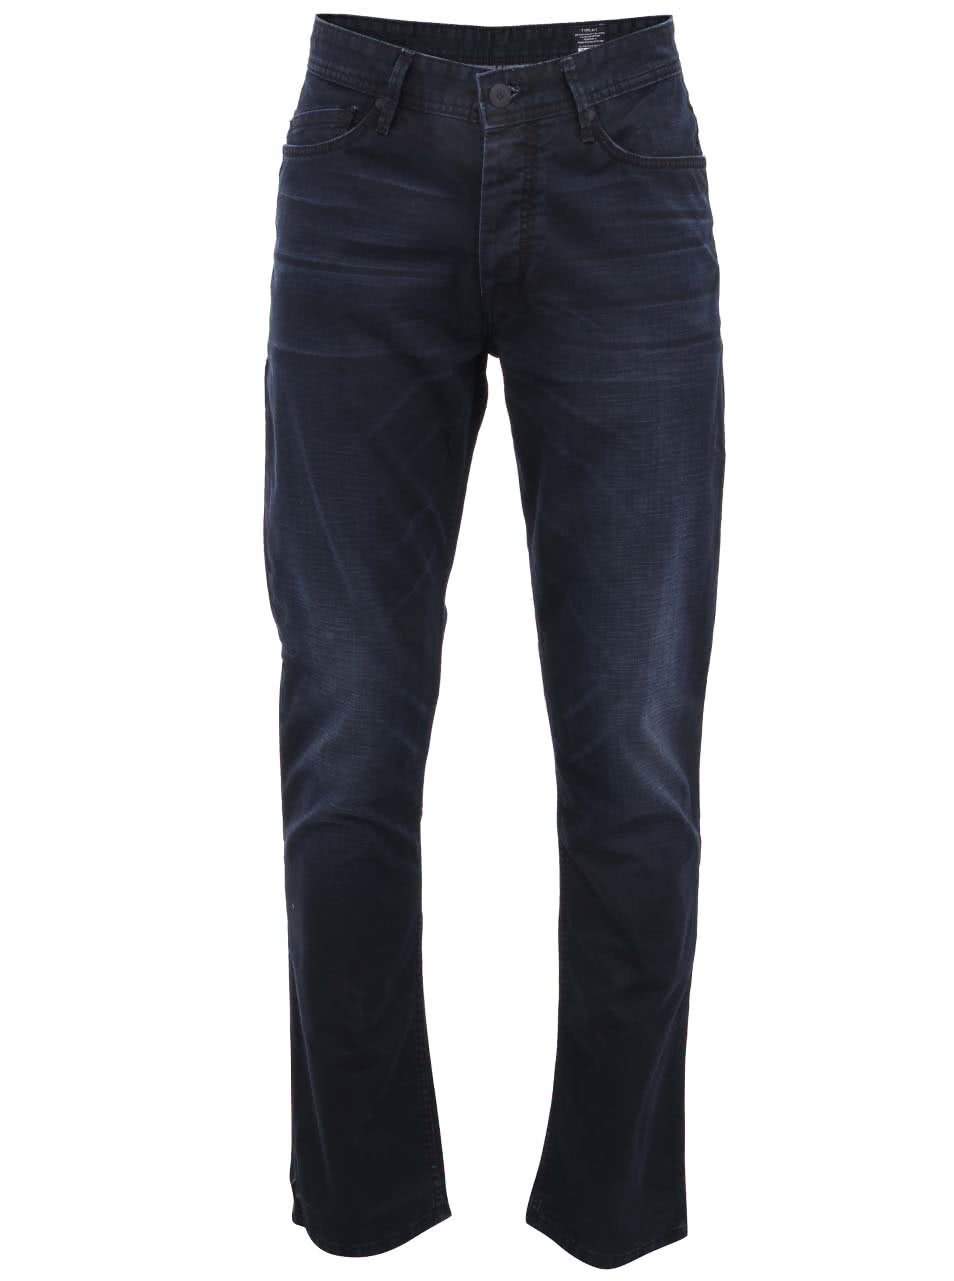 Tmavě modré džíny Voi Jeans Tailor